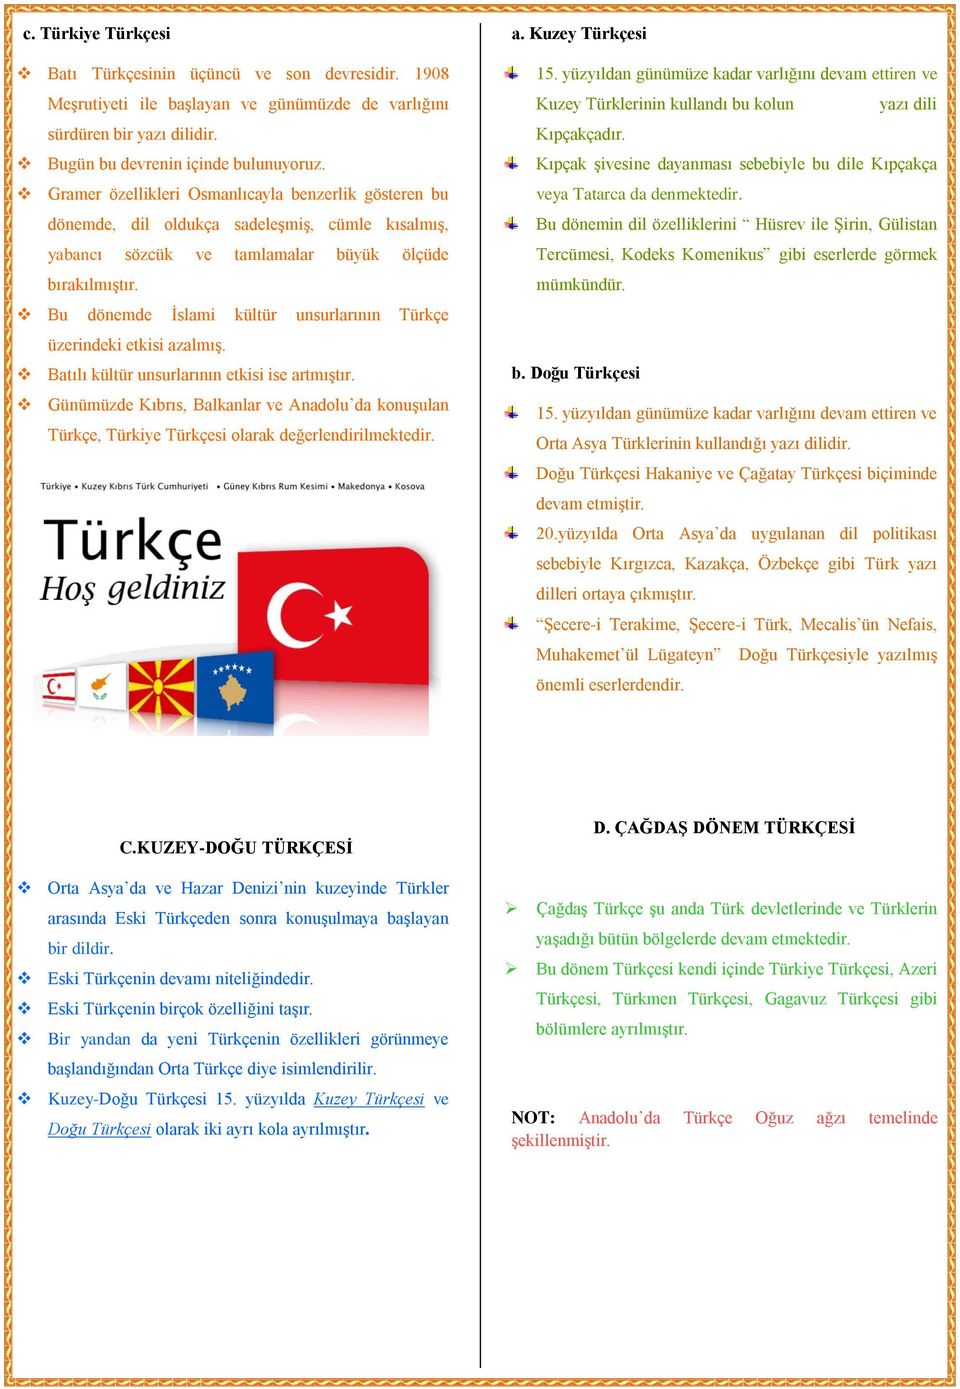 Bu dönemde İslami kültür unsurlarının Türkçe üzerindeki etkisi azalmış. Batılı kültür unsurlarının etkisi ise artmıştır.